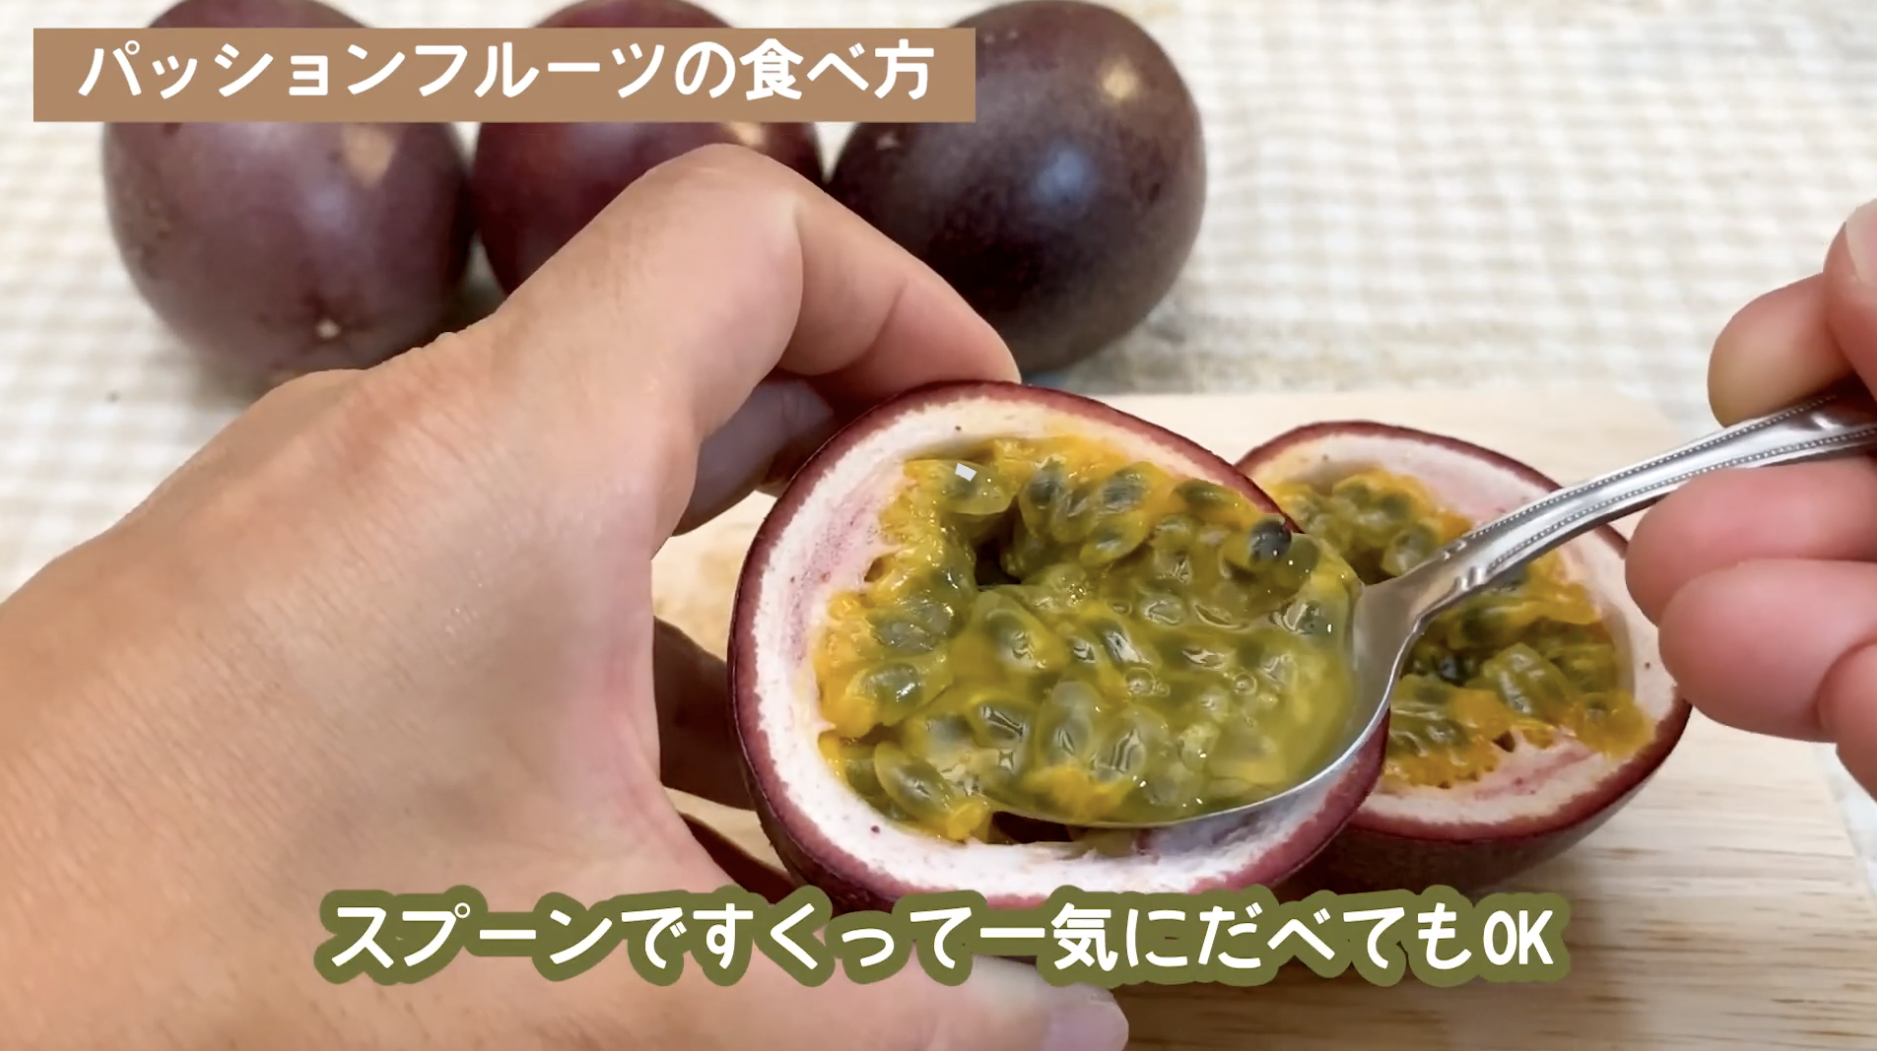 沖縄 パッションフルーツ 通販 安いお店 食べ方 栄養など徹底調査 なるかわくろの沖縄移住 Blog Vlog